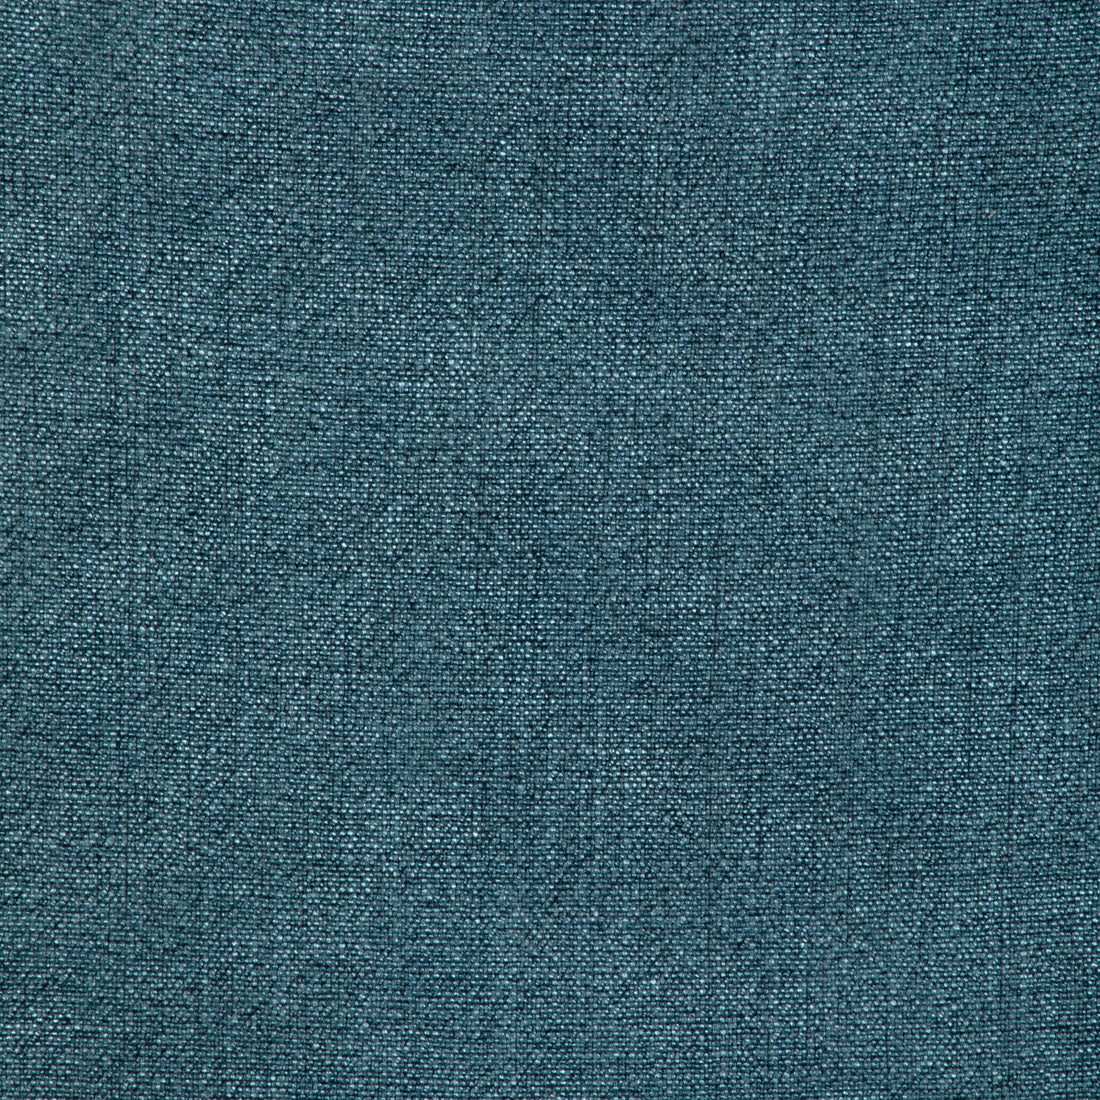 Kravet Basics fabric in 35189-313 color - pattern 35189.313.0 - by Kravet Basics